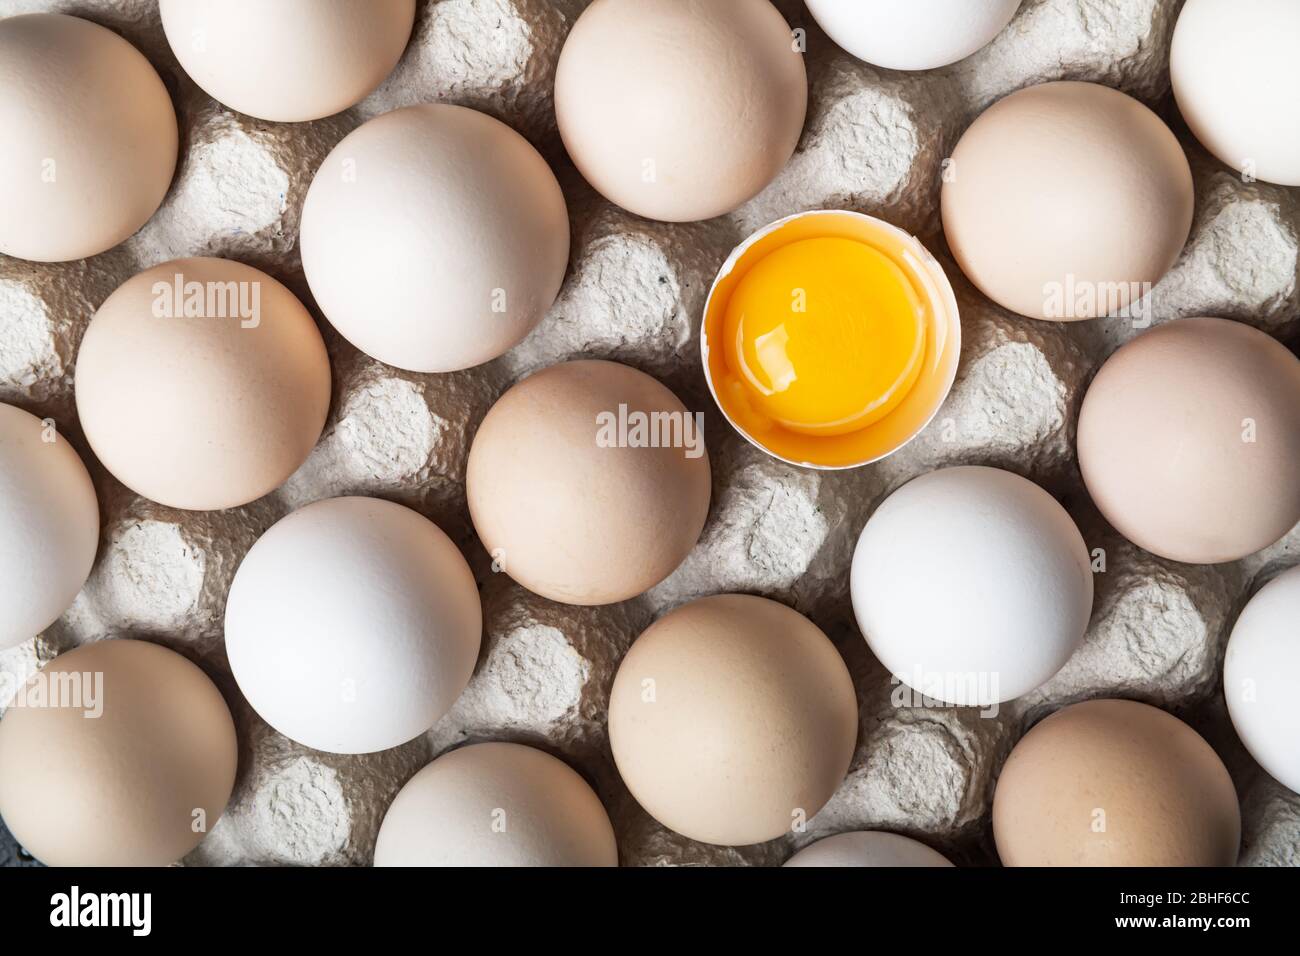 Huevos de pollo en envases orgánicos primer plano. Mitad de huevo roto entre otros huevos. Fotografía de alimentos Foto de stock